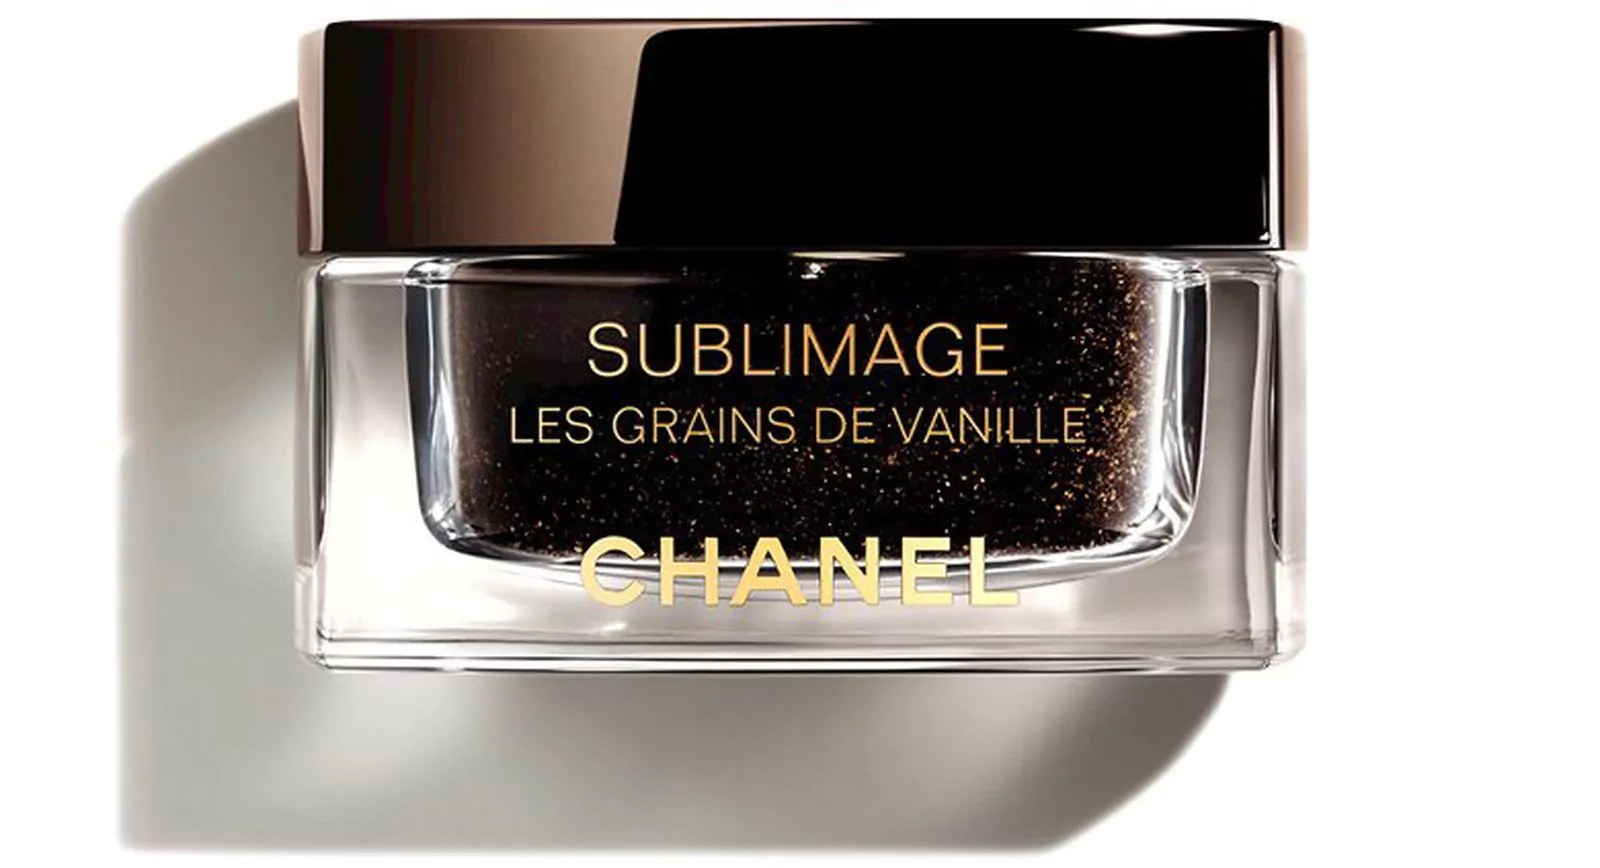 Мягкий скраб для лица с семенами ванили планифолии Chanel Sublimage, фото 2